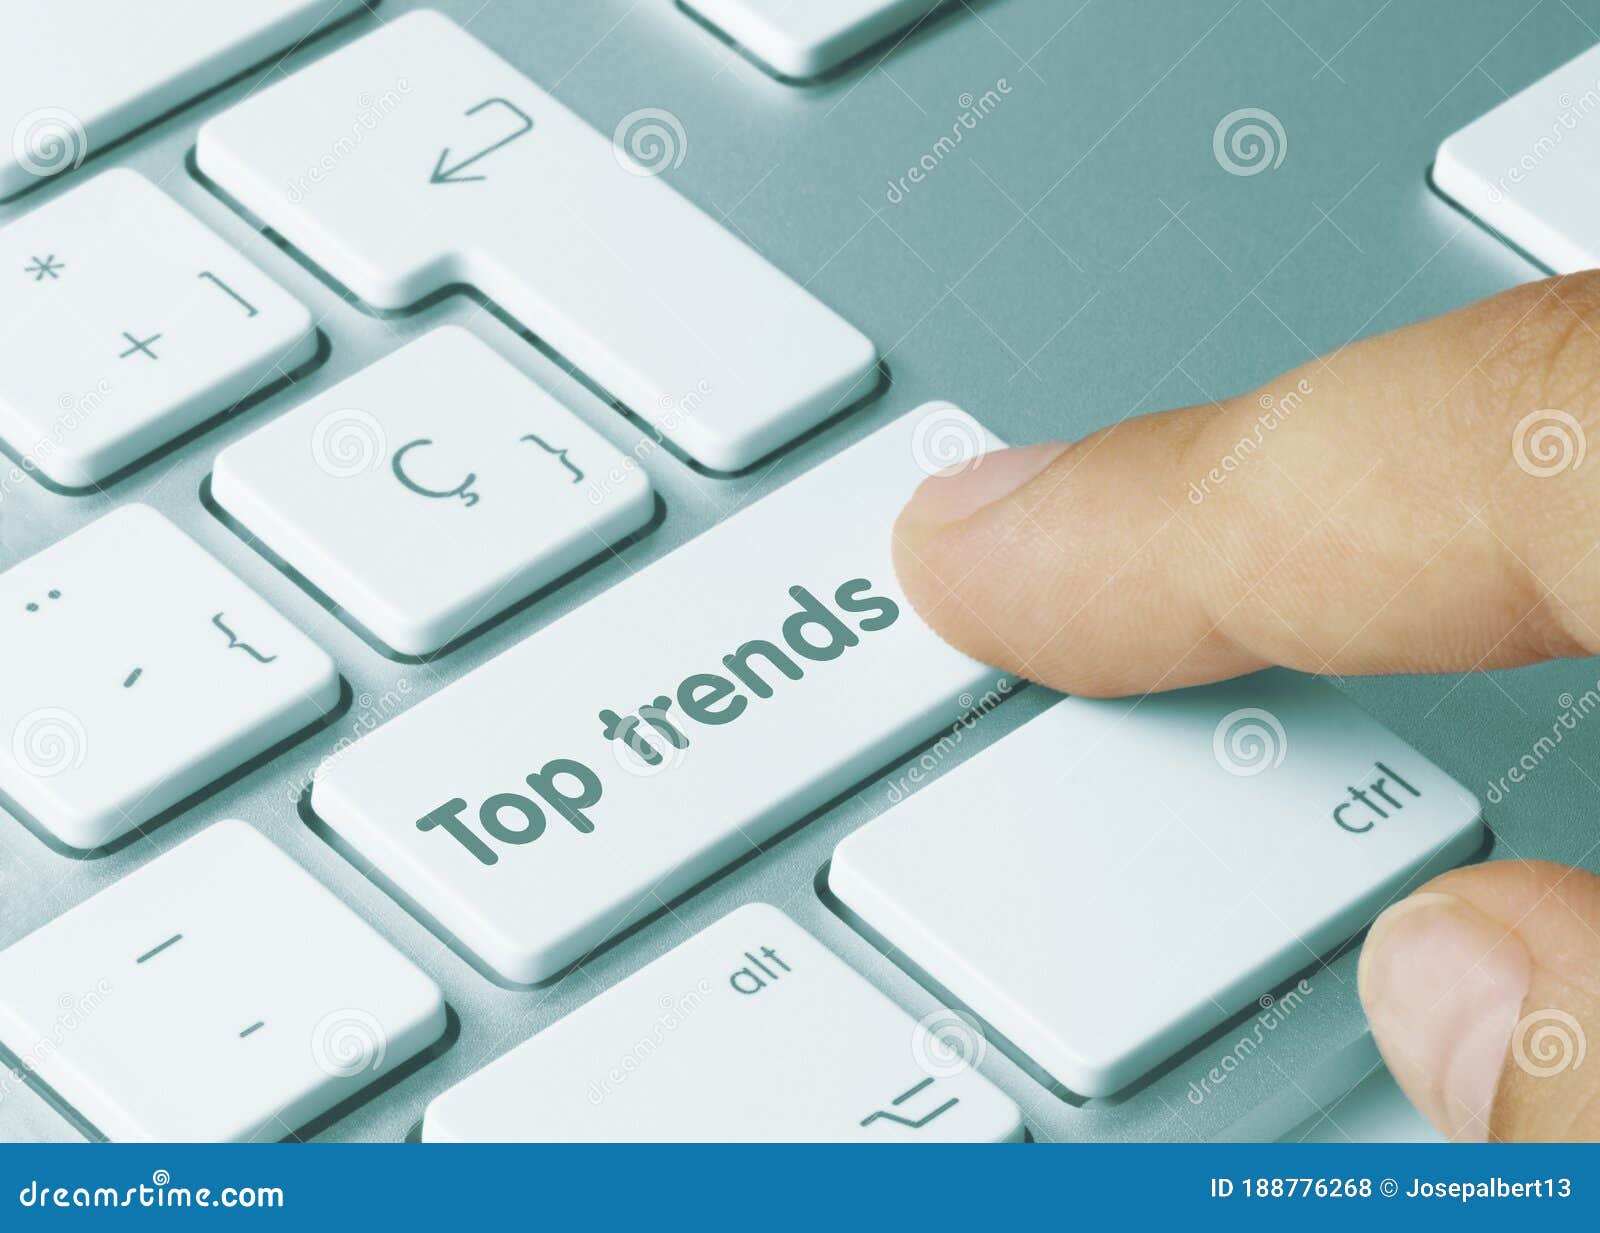 top trends - inscription on blue keyboard key